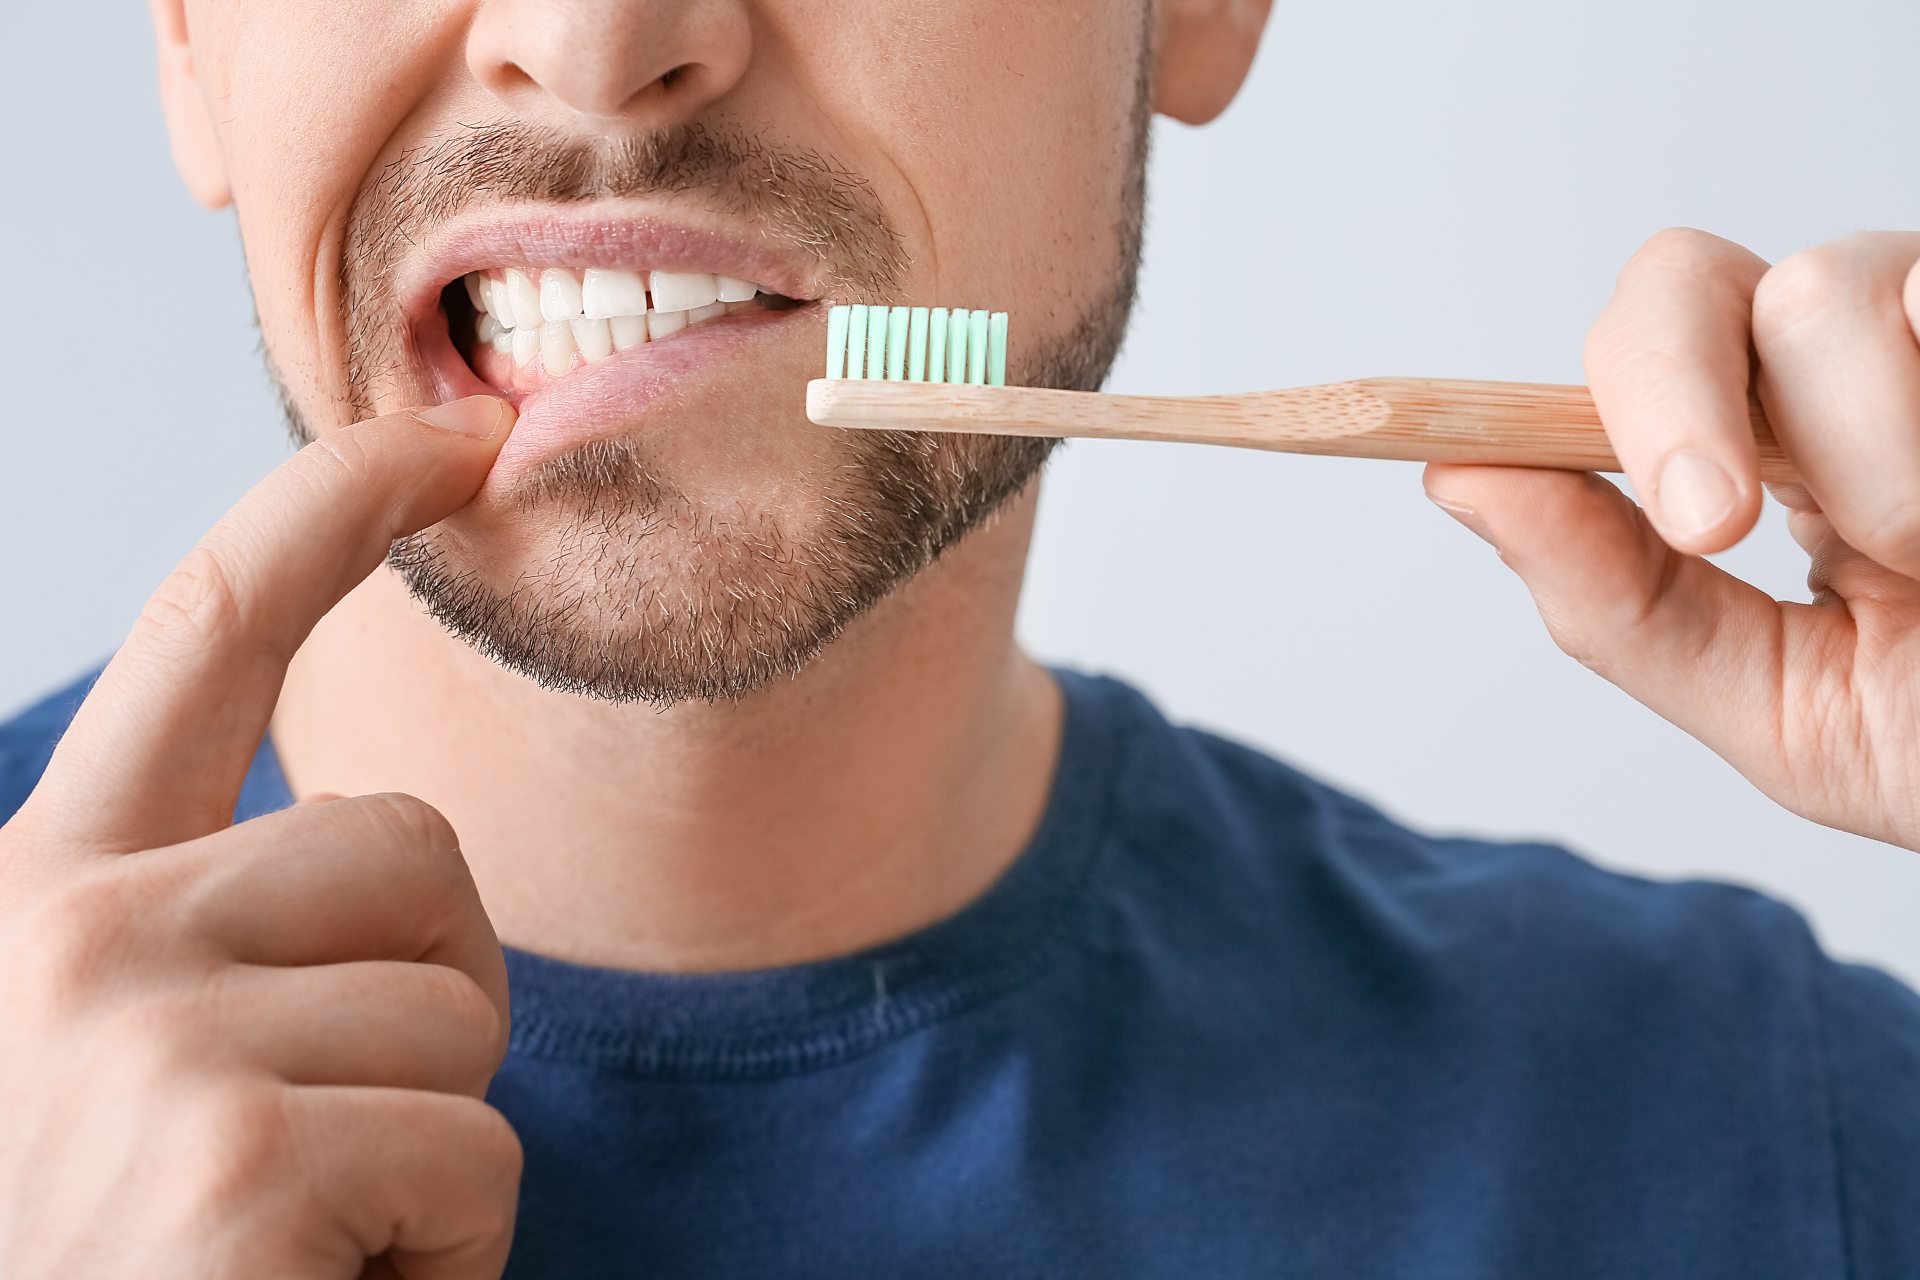 Mycie zębów – tego nie rób!